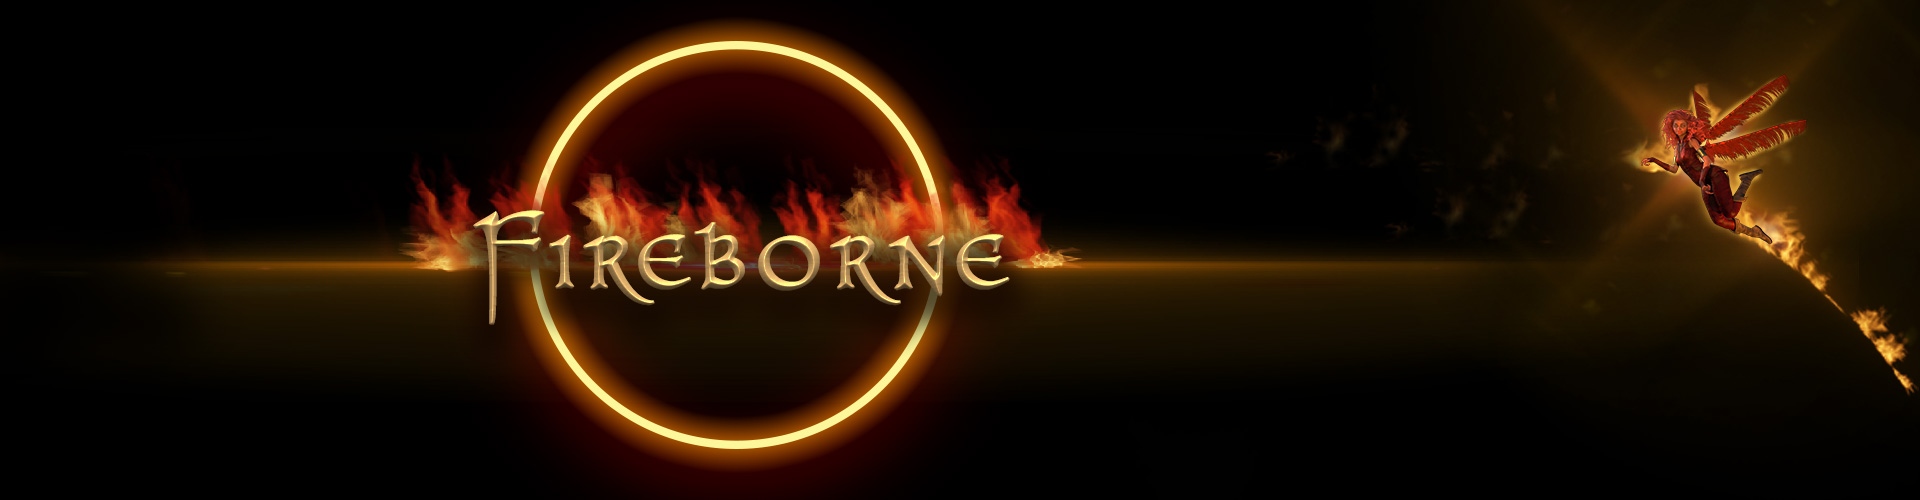 Fireborene-1-banner-alt